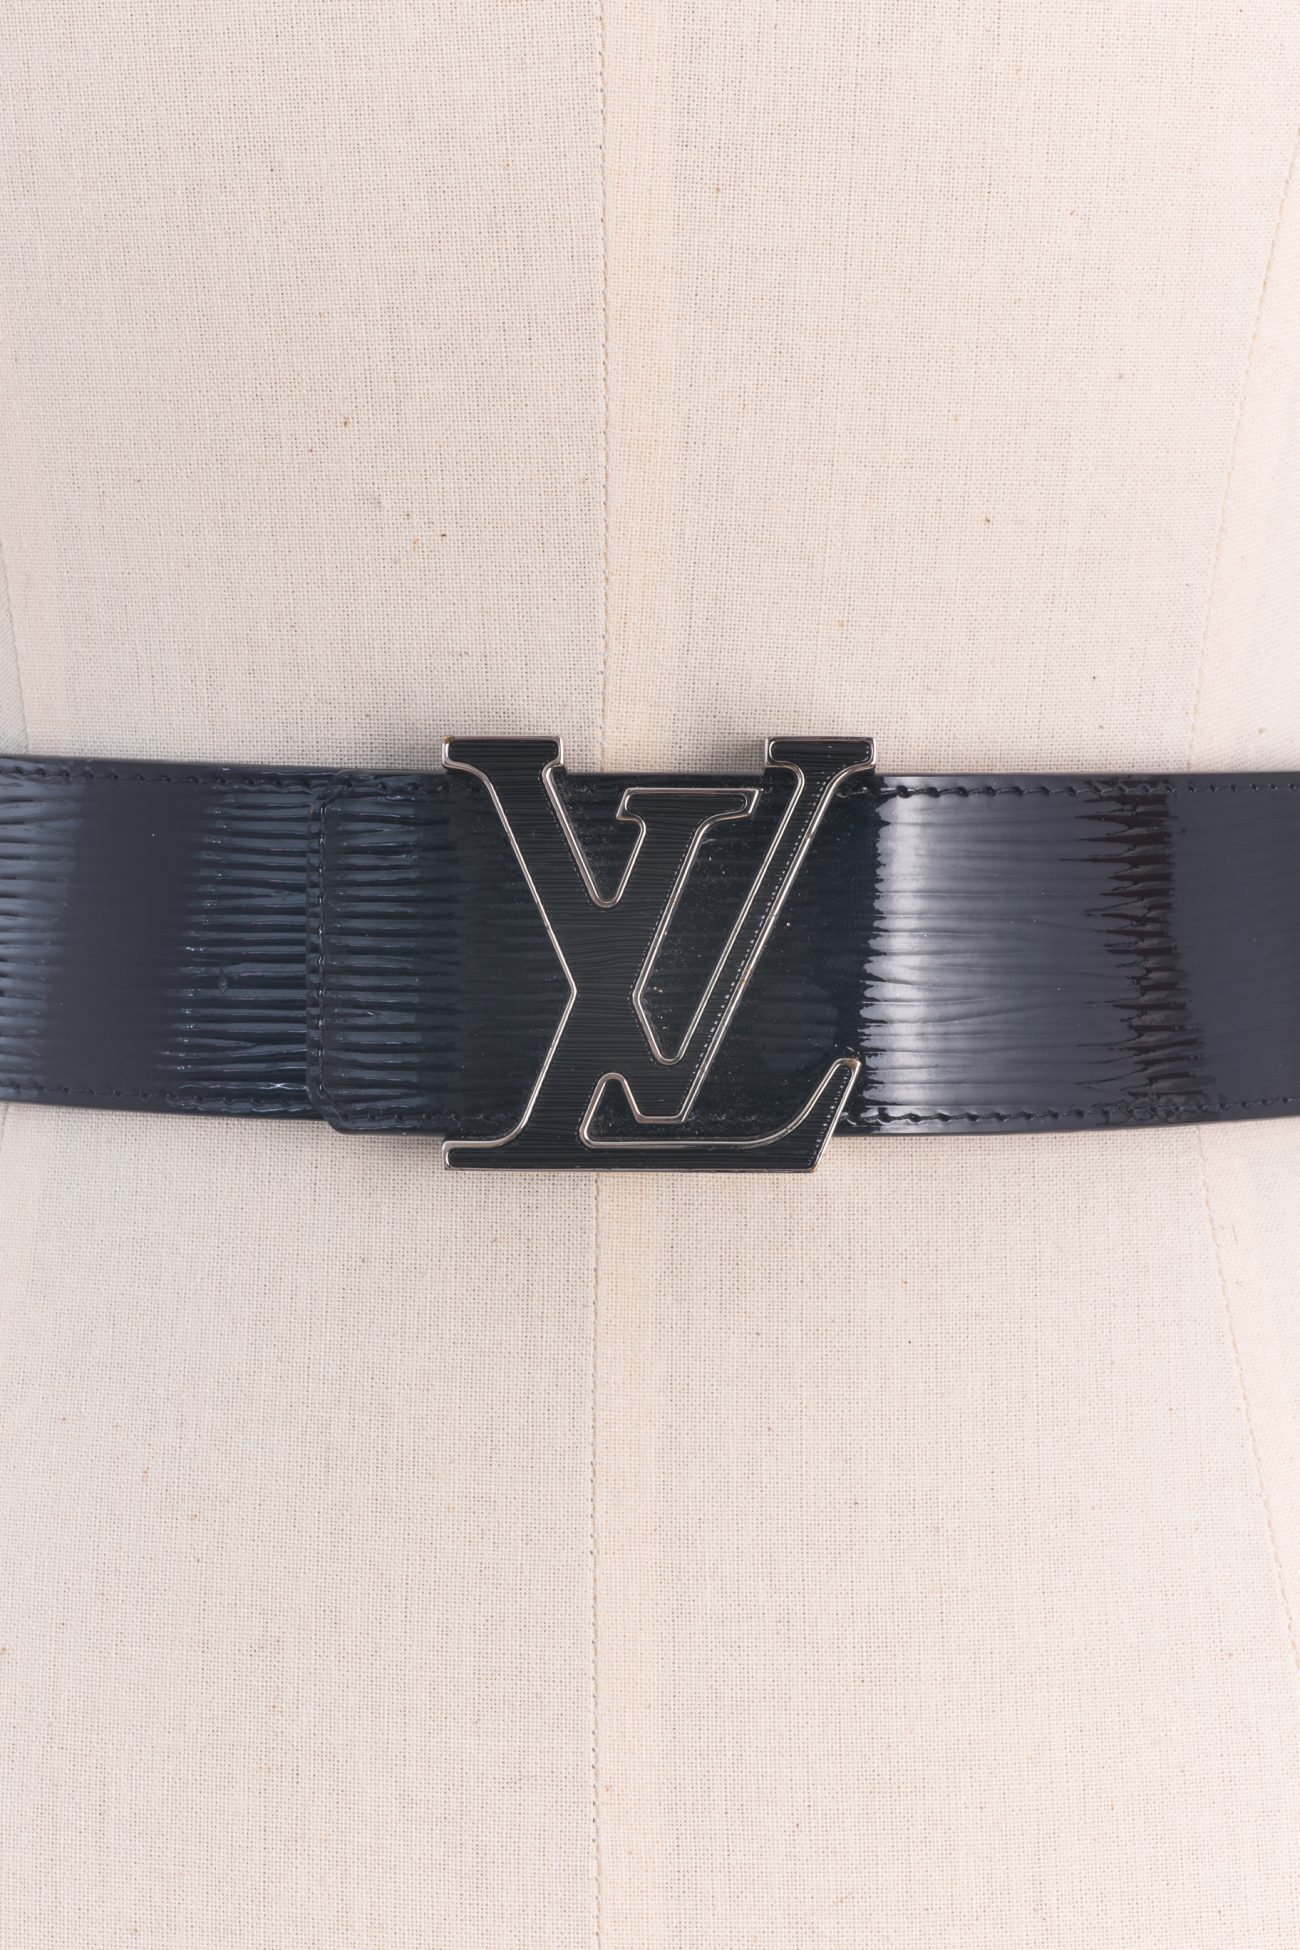 Louis Vuitton Initials Epi leather belt